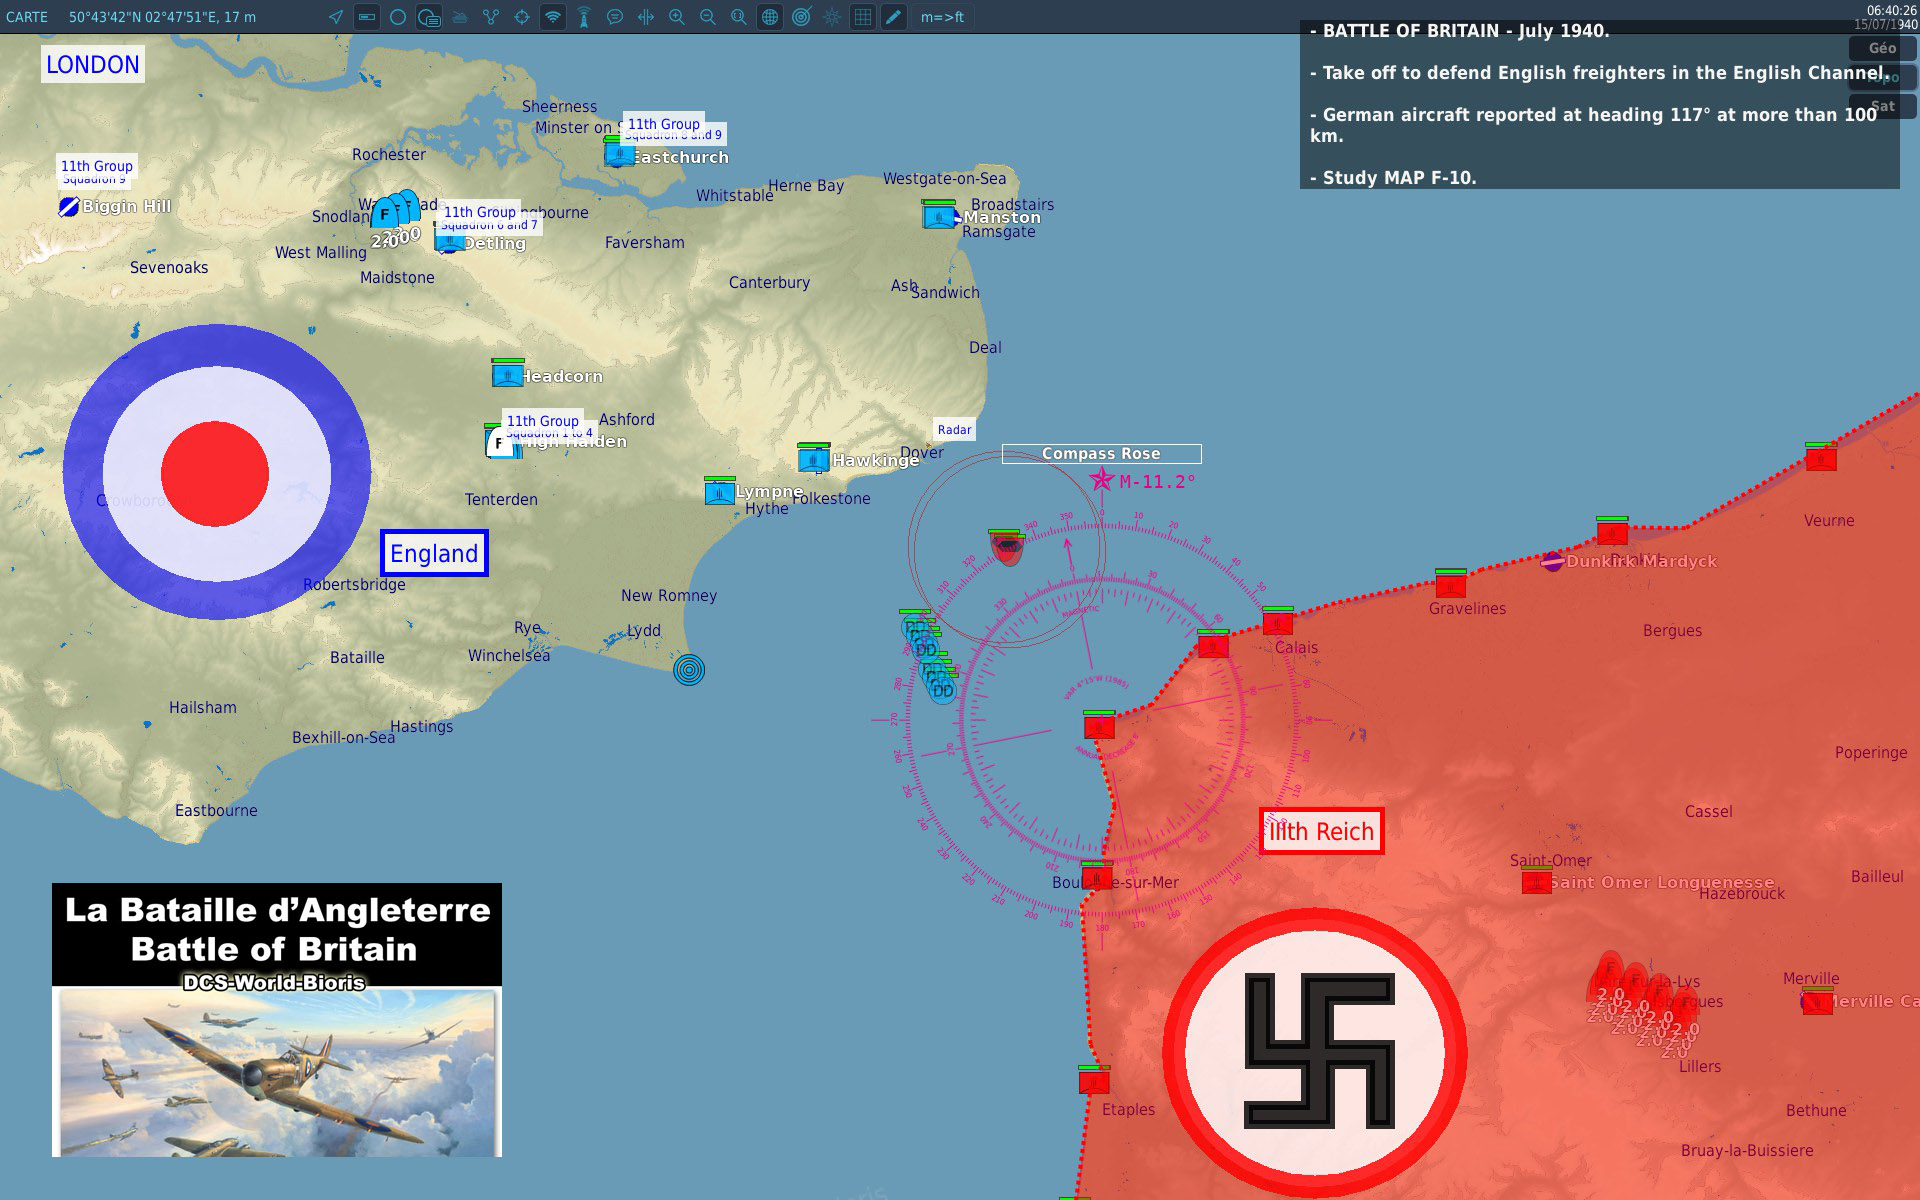 Battle of Britain - Channel - July 1940